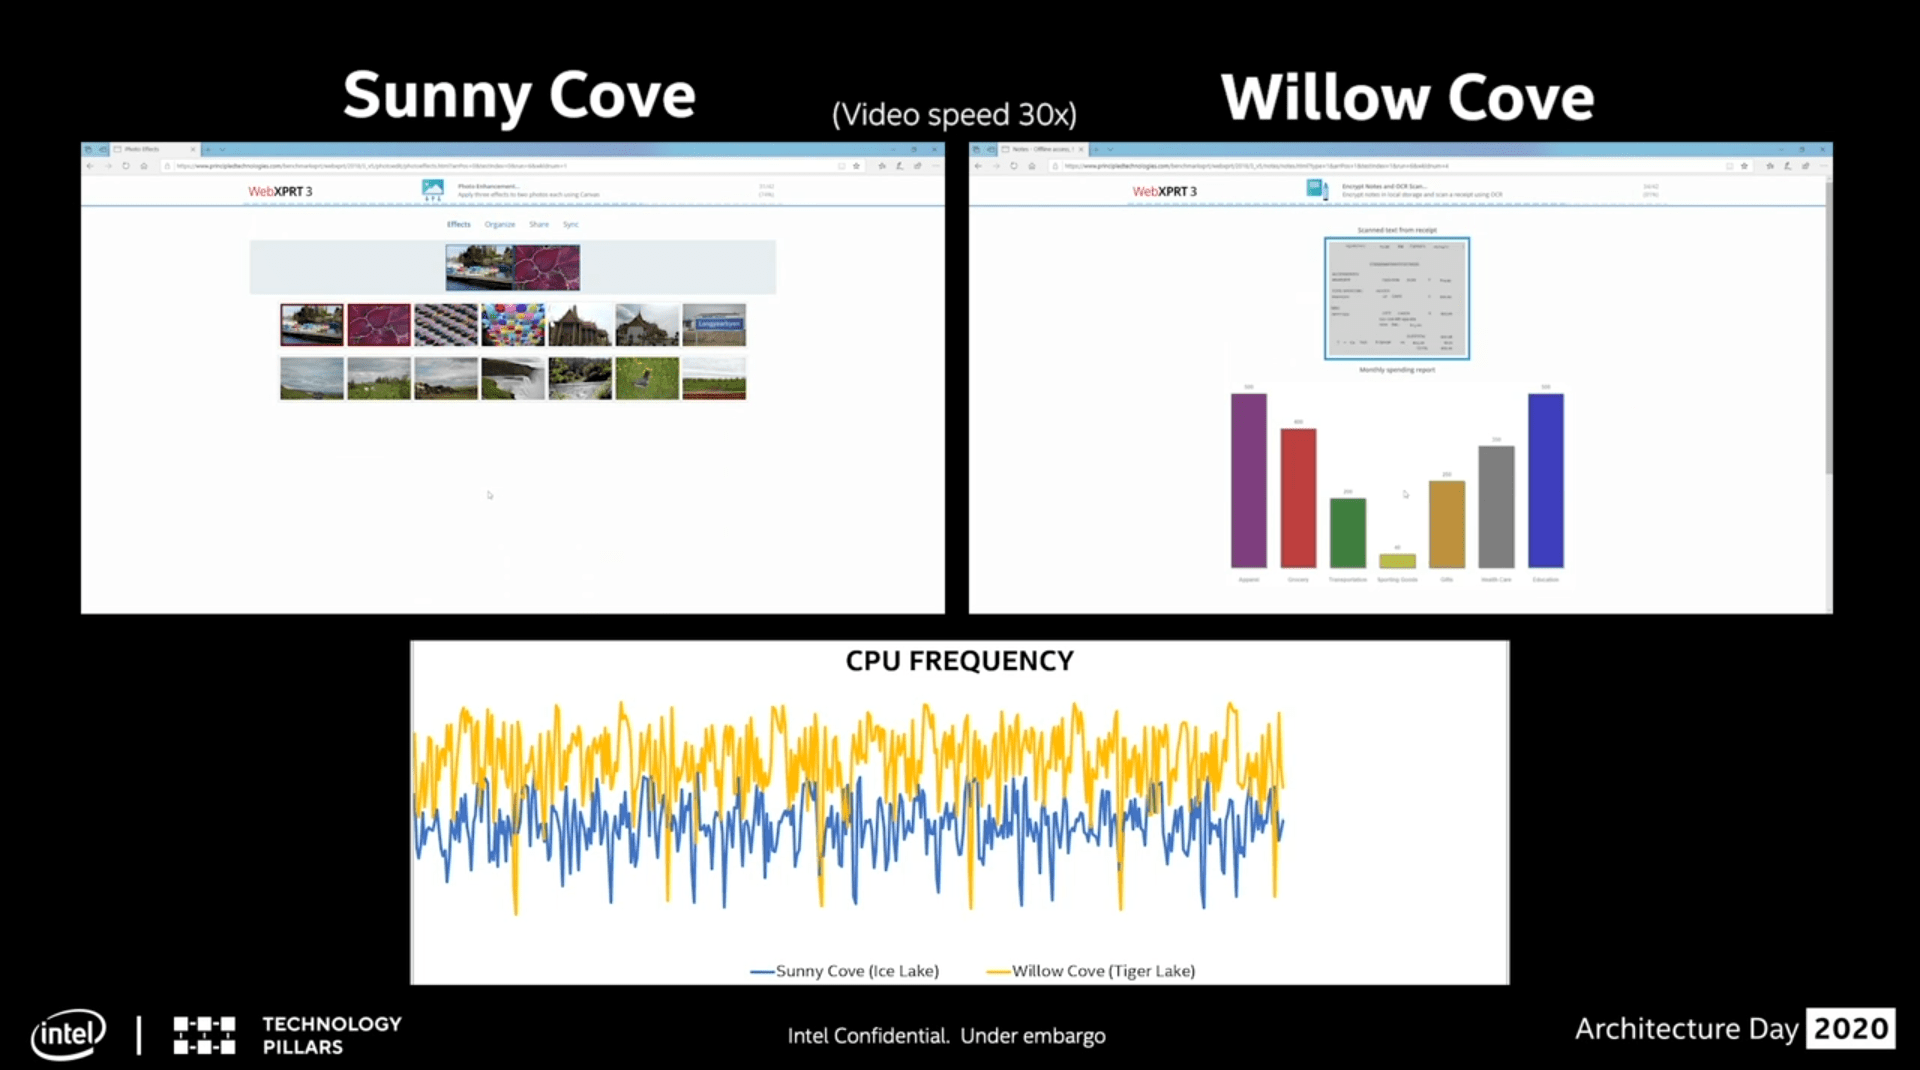 Taktverlauf im Vergleich von Sunny cove zu Willow Cove